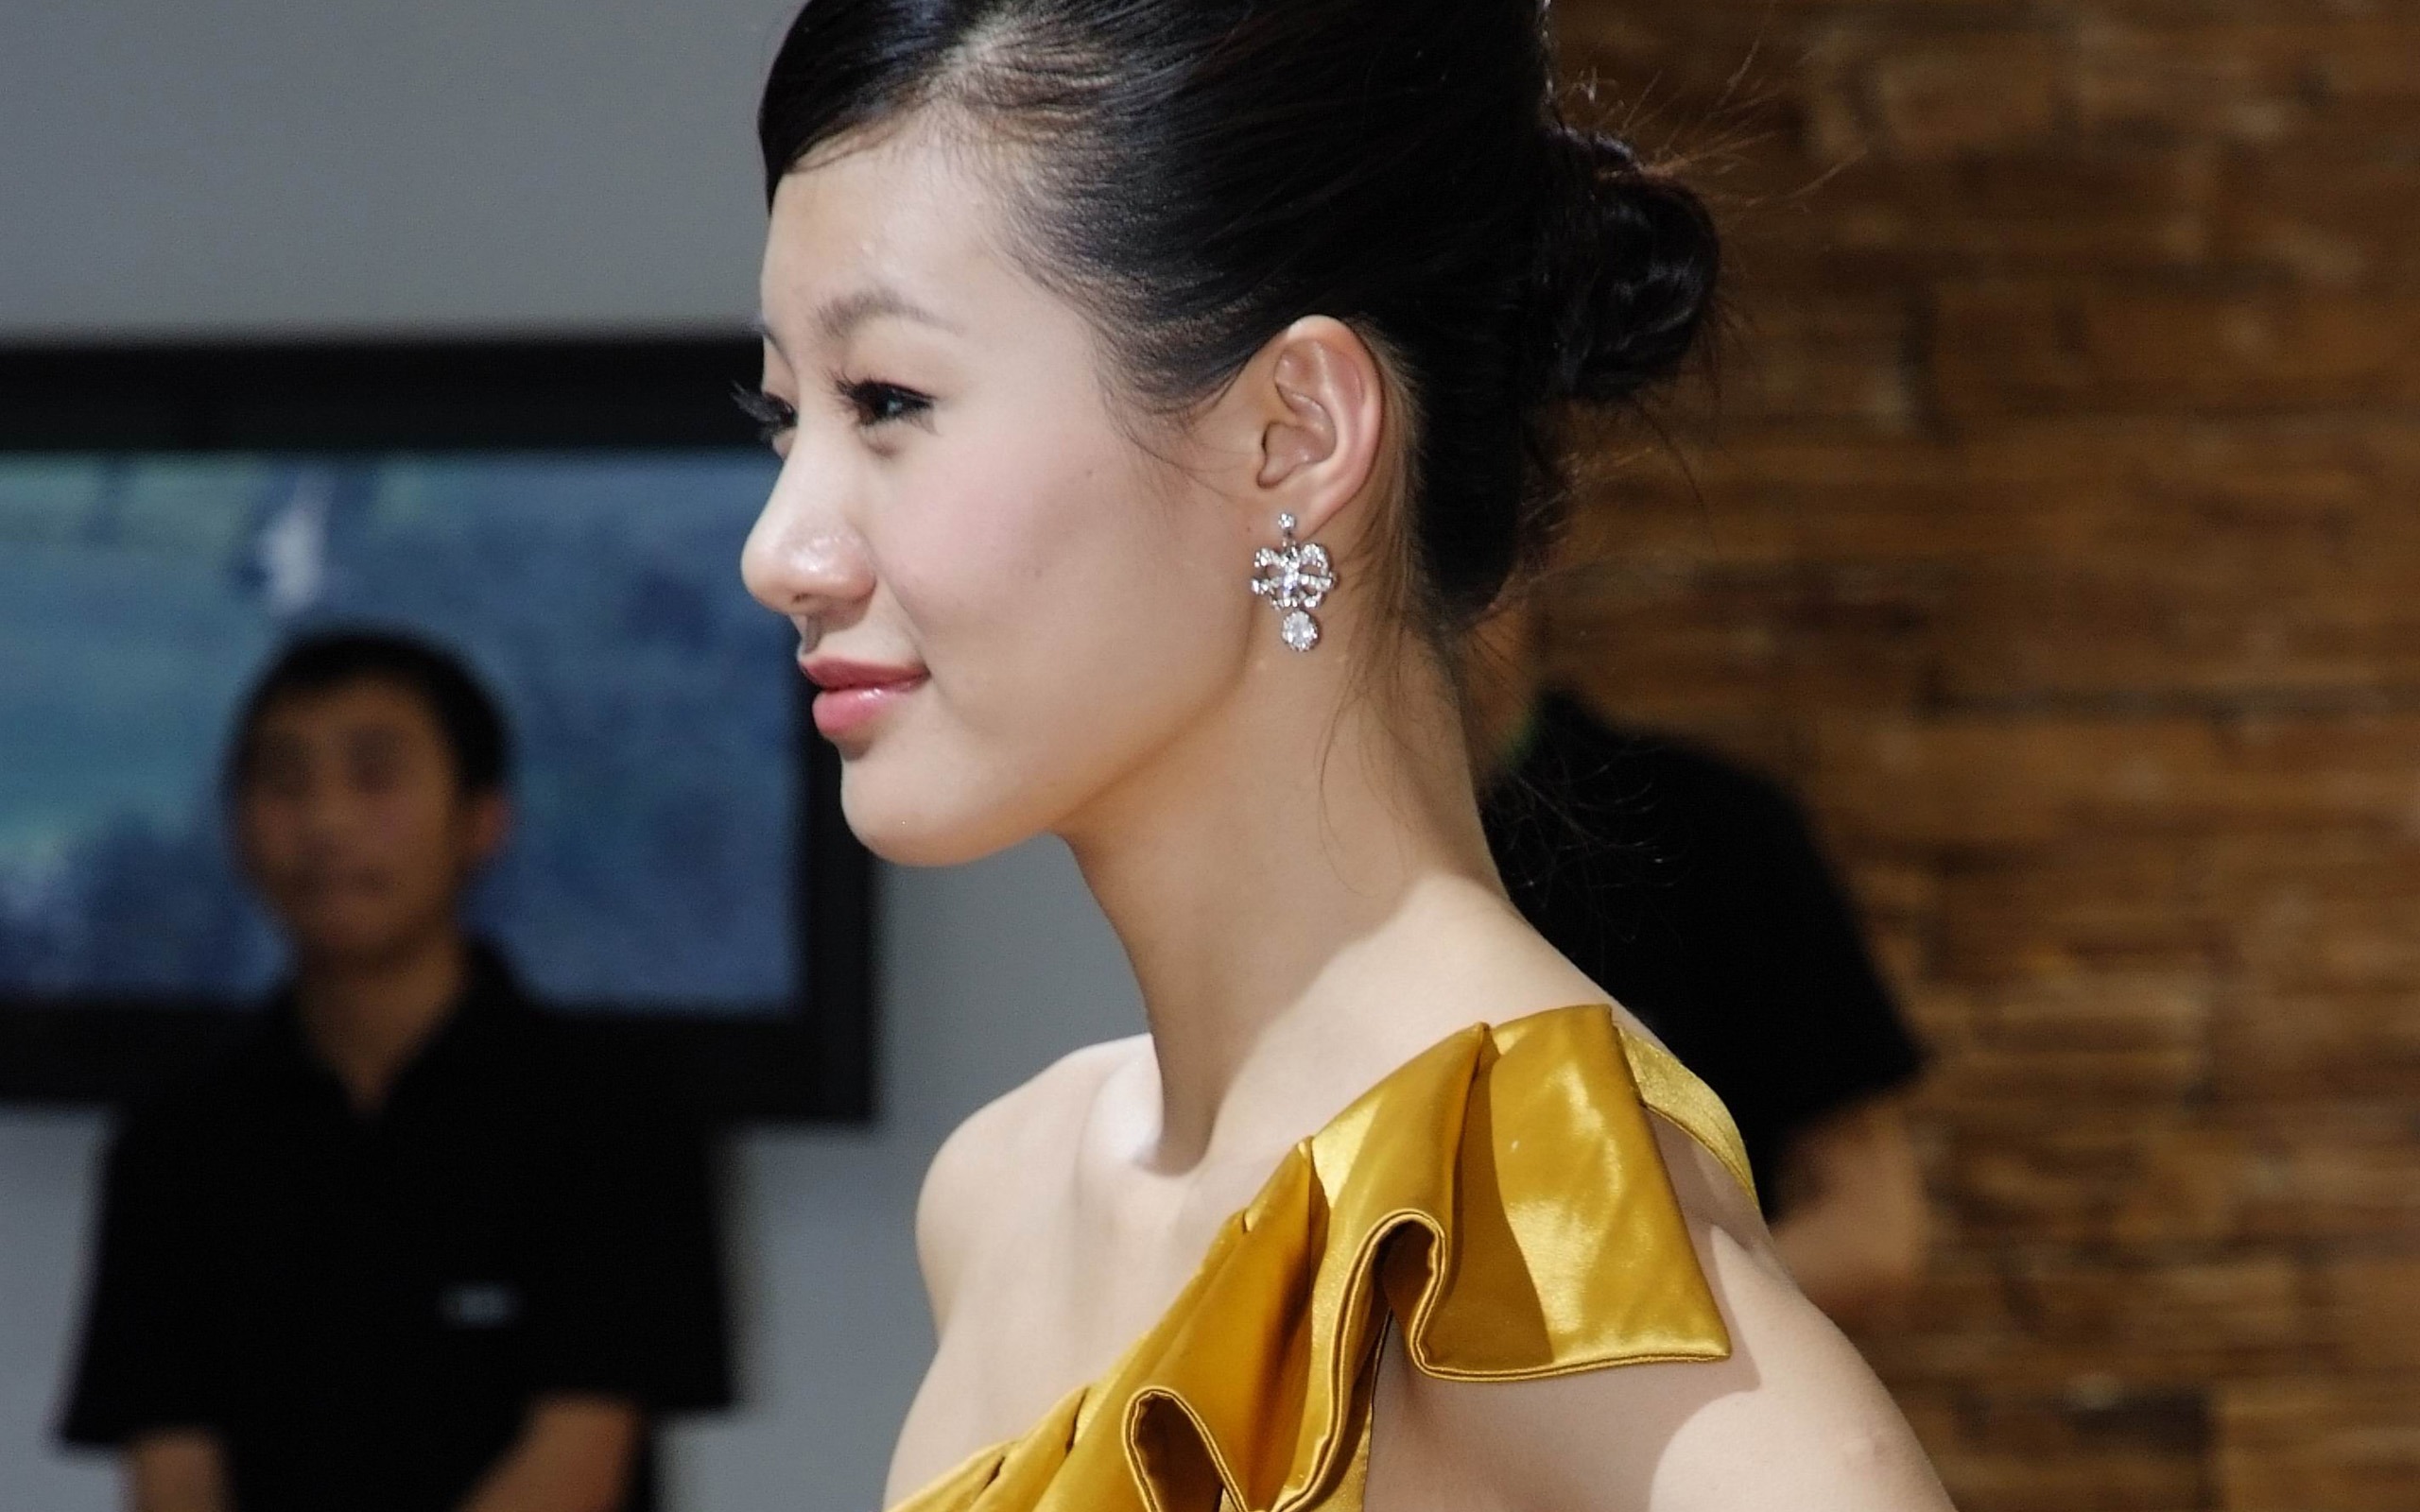 2010北京国际车展 美女车模 (螺纹钢作品)13 - 2560x1600